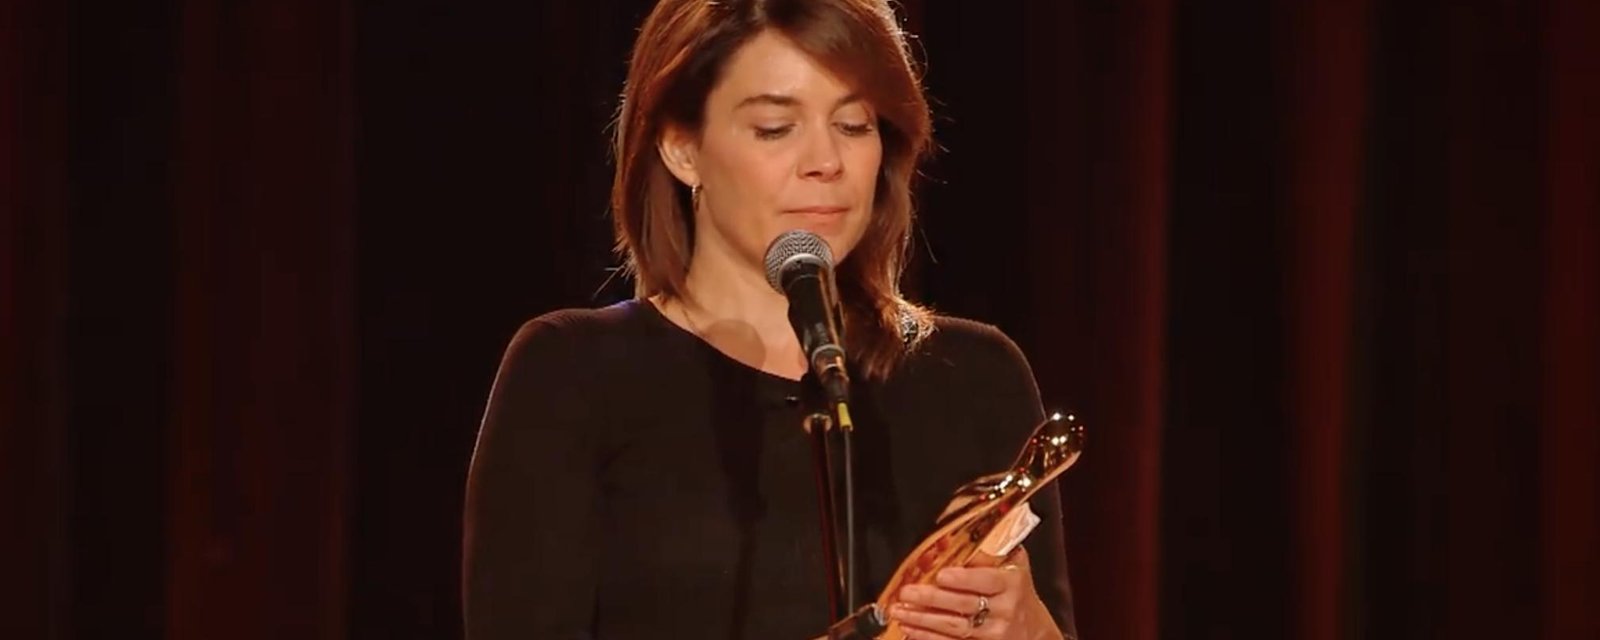 À VOIR: Julie Perreault remporte son 1er trophée Artis à vie et ne peut retenir ses émotions